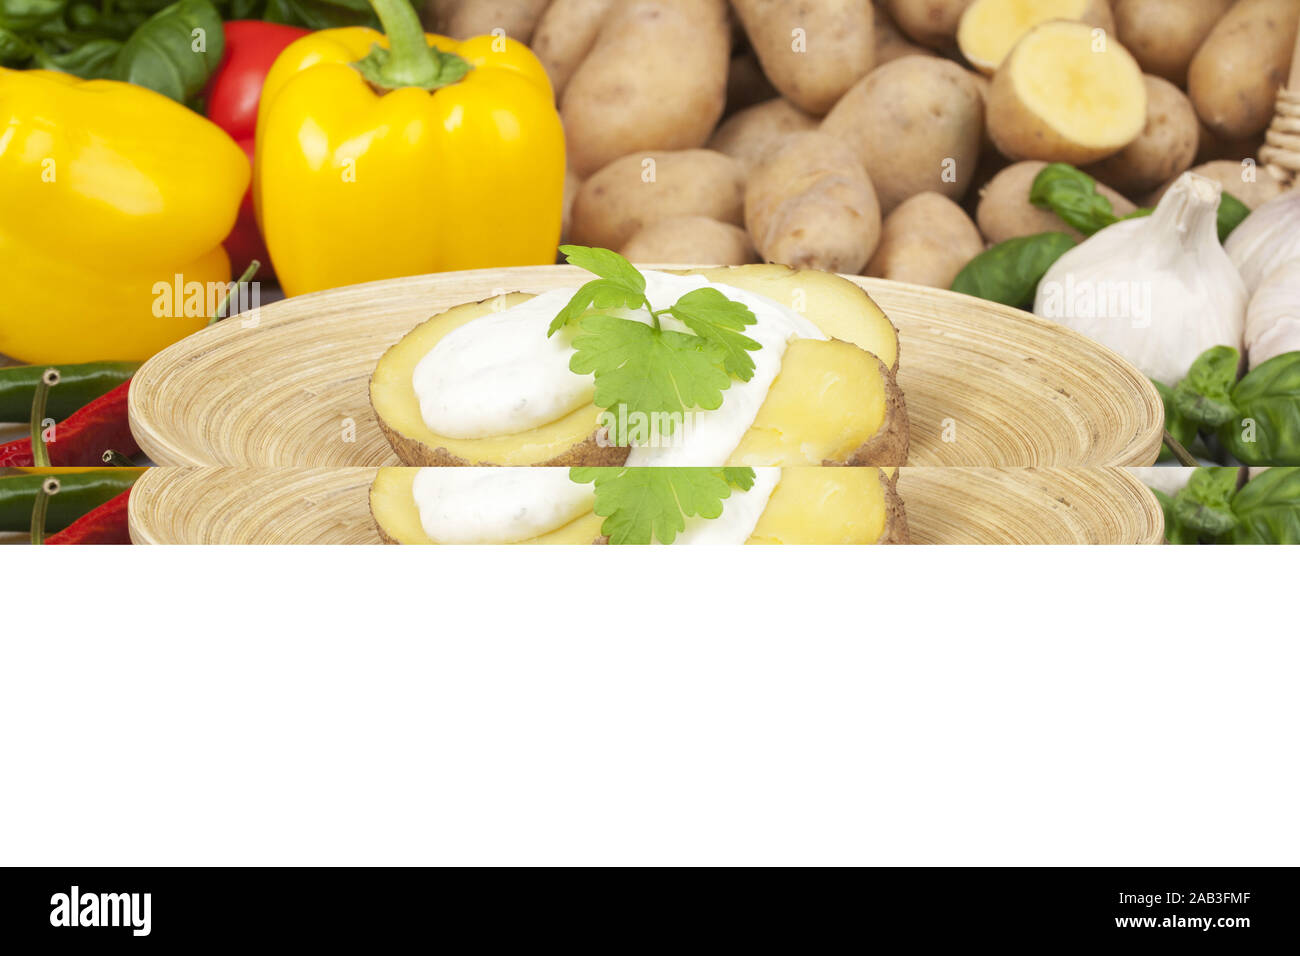 Mit Kartoffeln und Quark Gemuese |Les pommes de terre avec le fromage cottage et les légumes| Banque D'Images